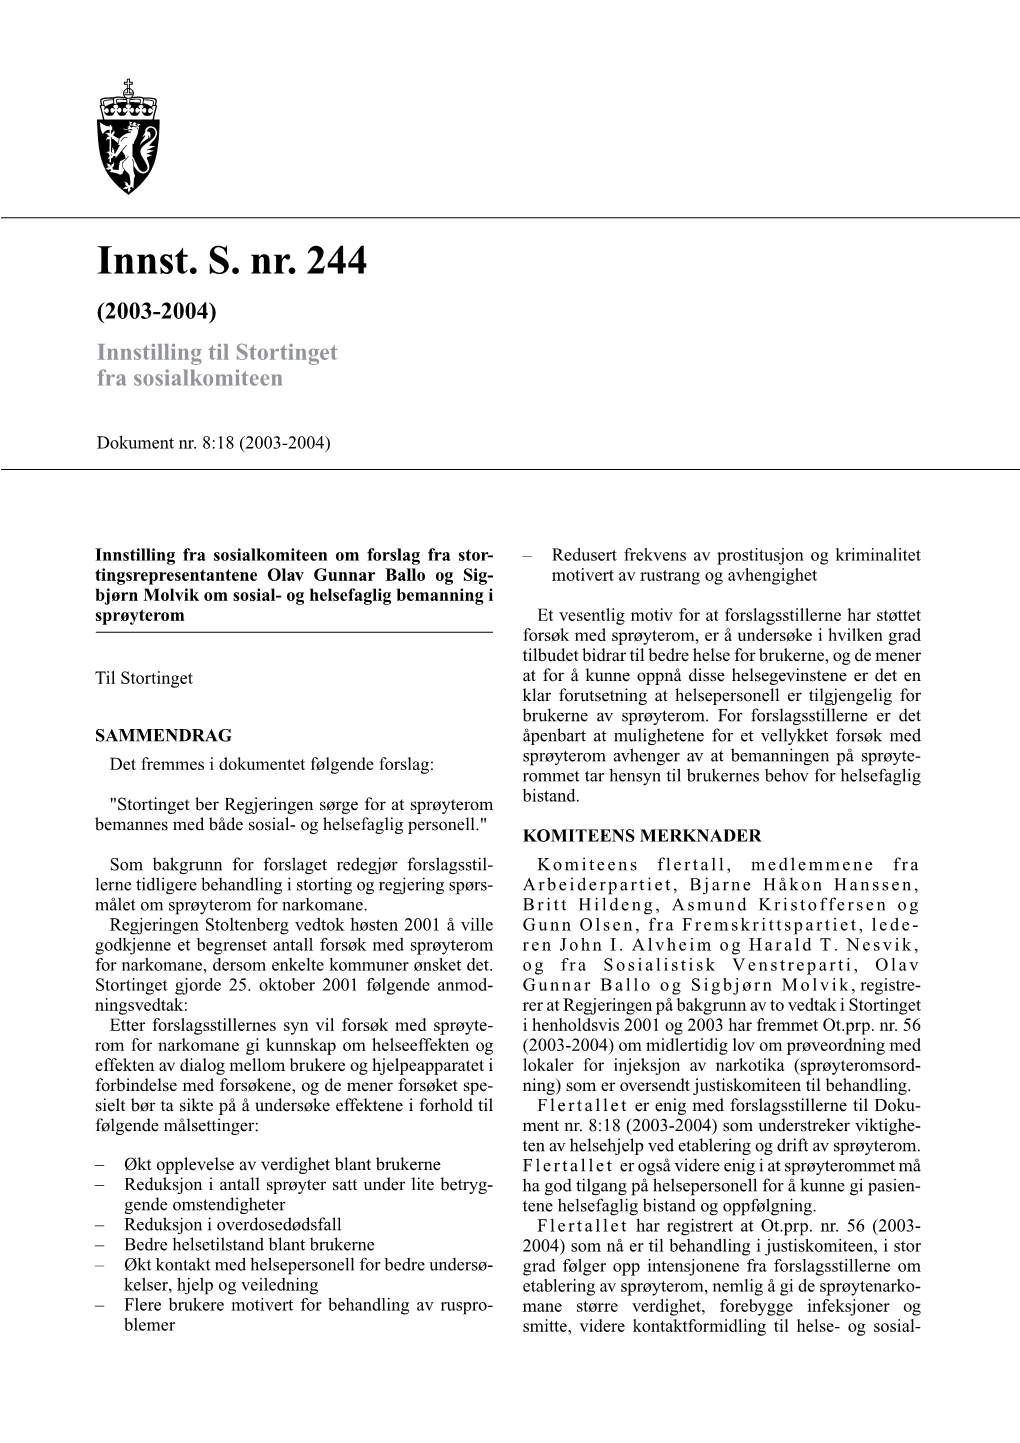 Innst. S. Nr. 244 (2003-2004) Innstilling Til Stortinget Fra Sosialkomiteen